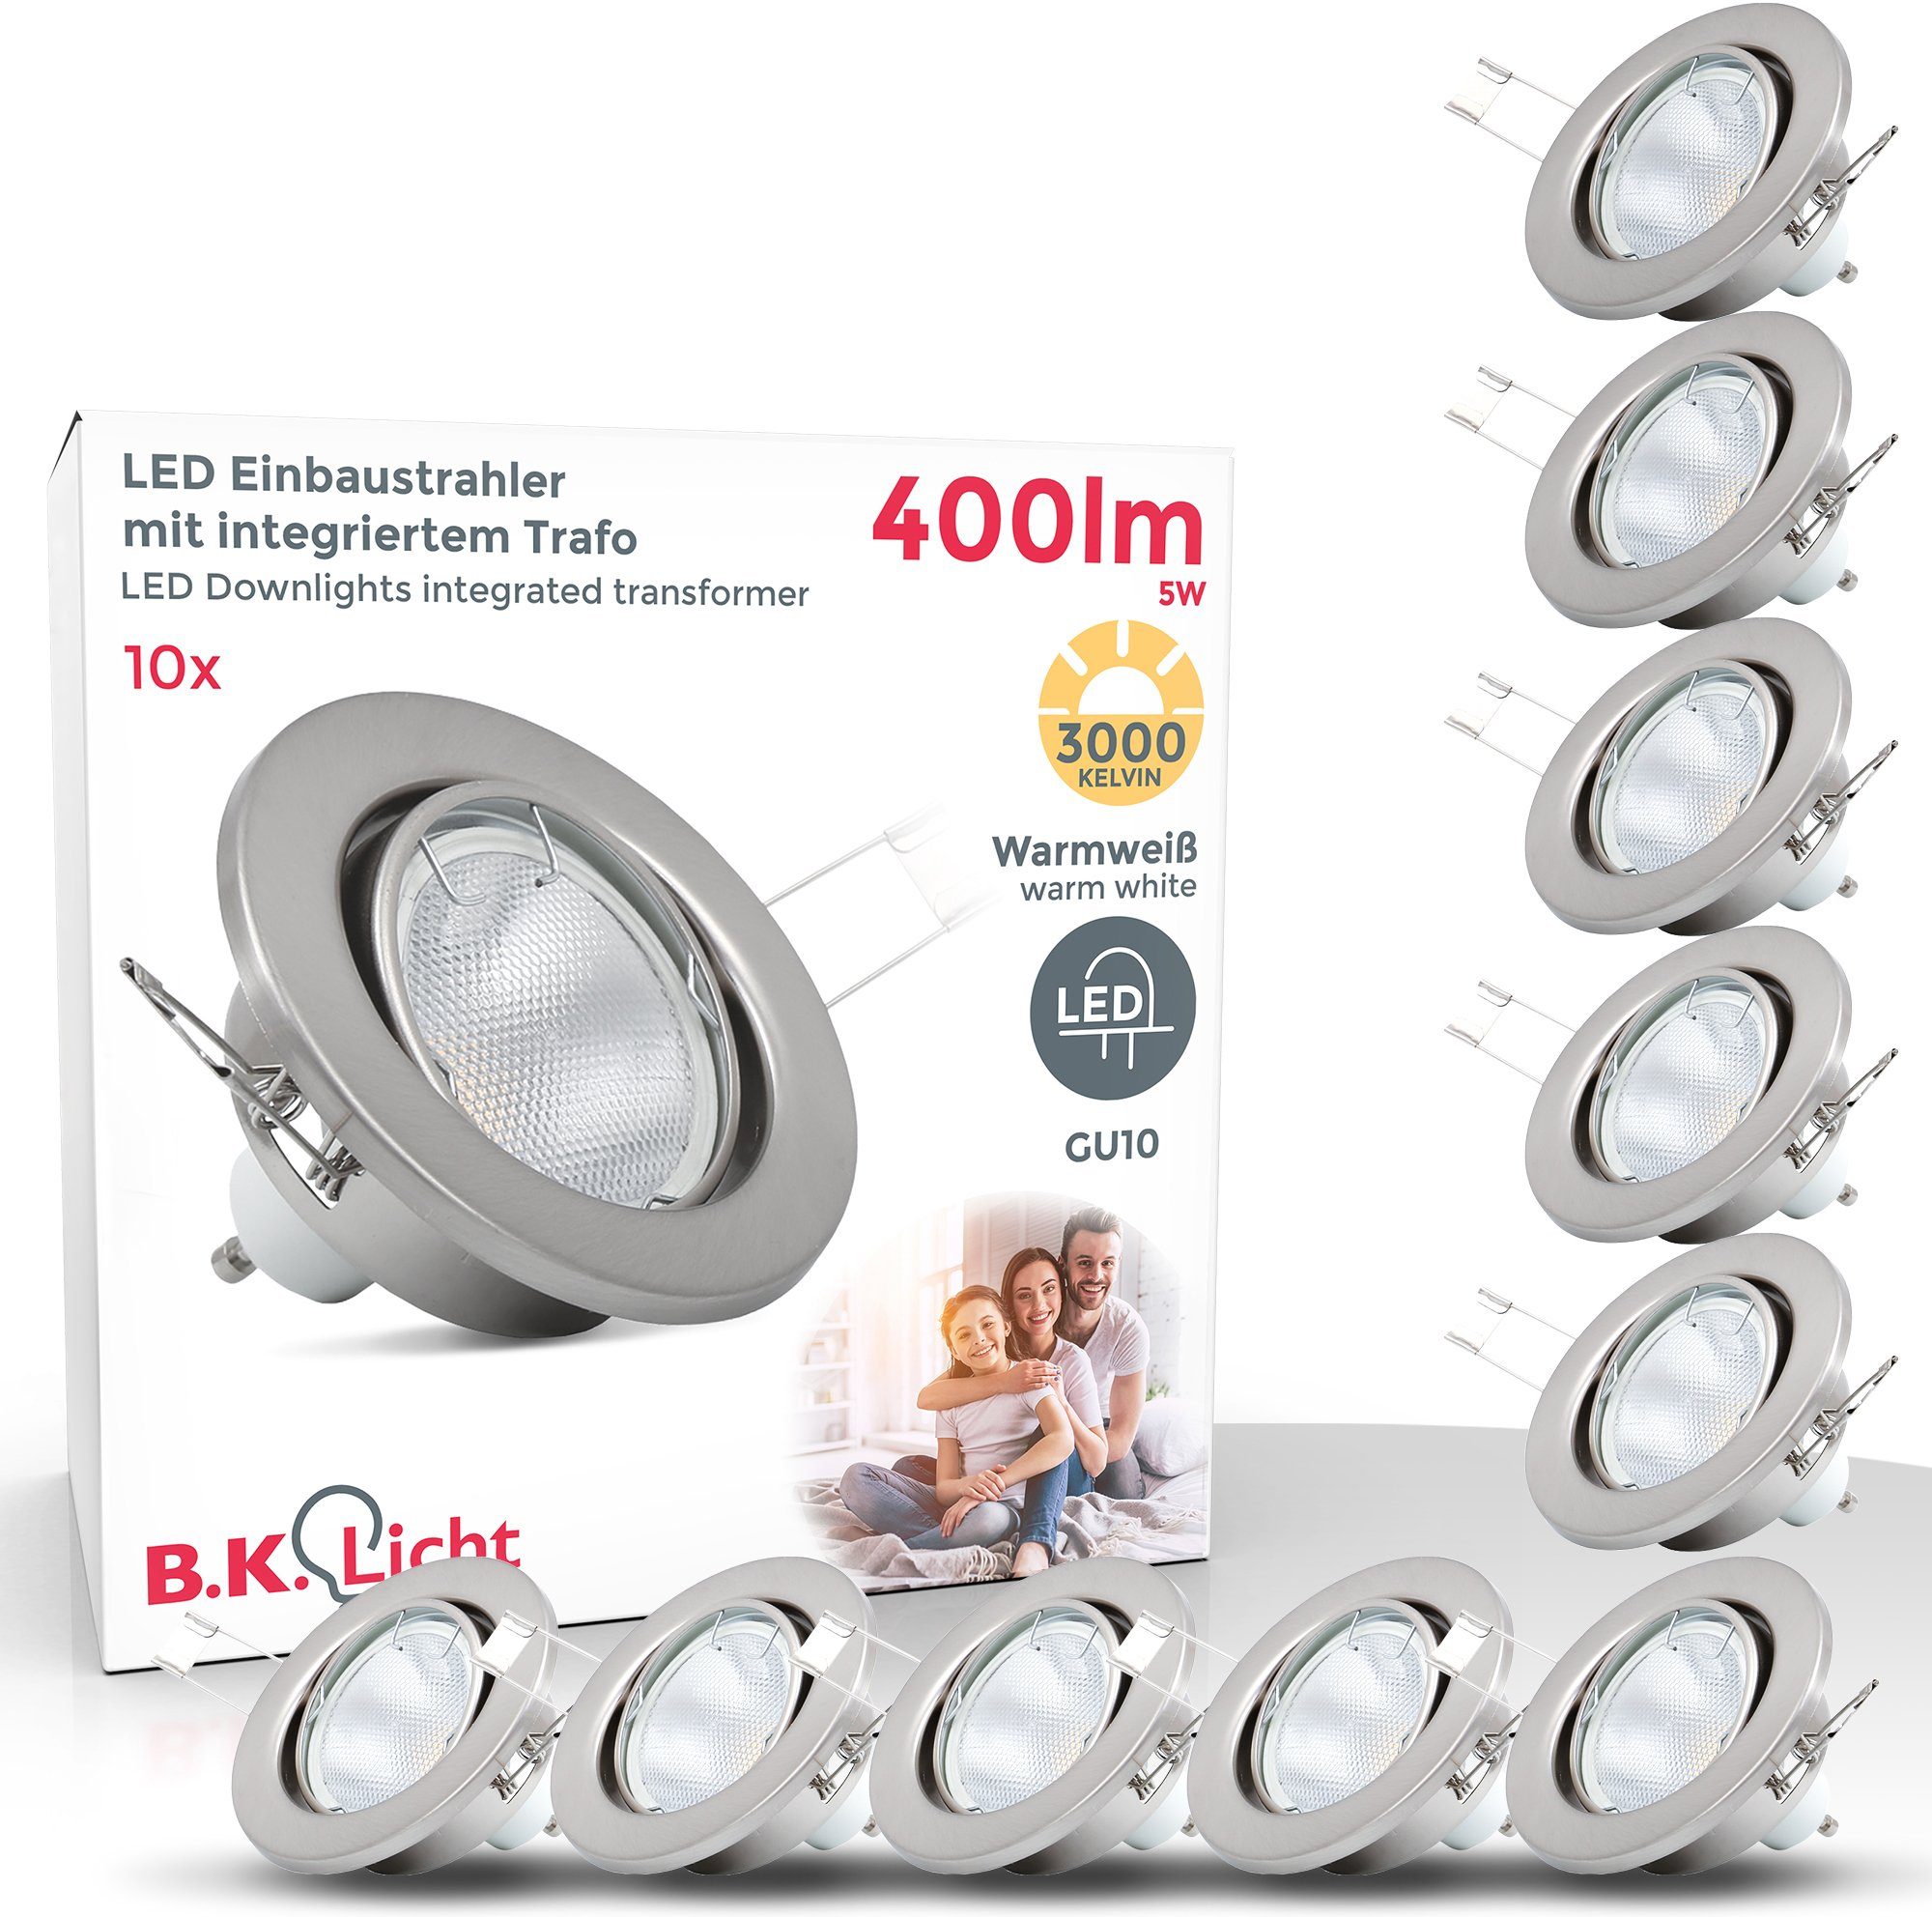 B.K.Licht LED Einbaustrahler, LED Einbauleuchten schwenkbar Decken Strahler Einbau Spots nickel matt GU10 online kaufen | OTTO